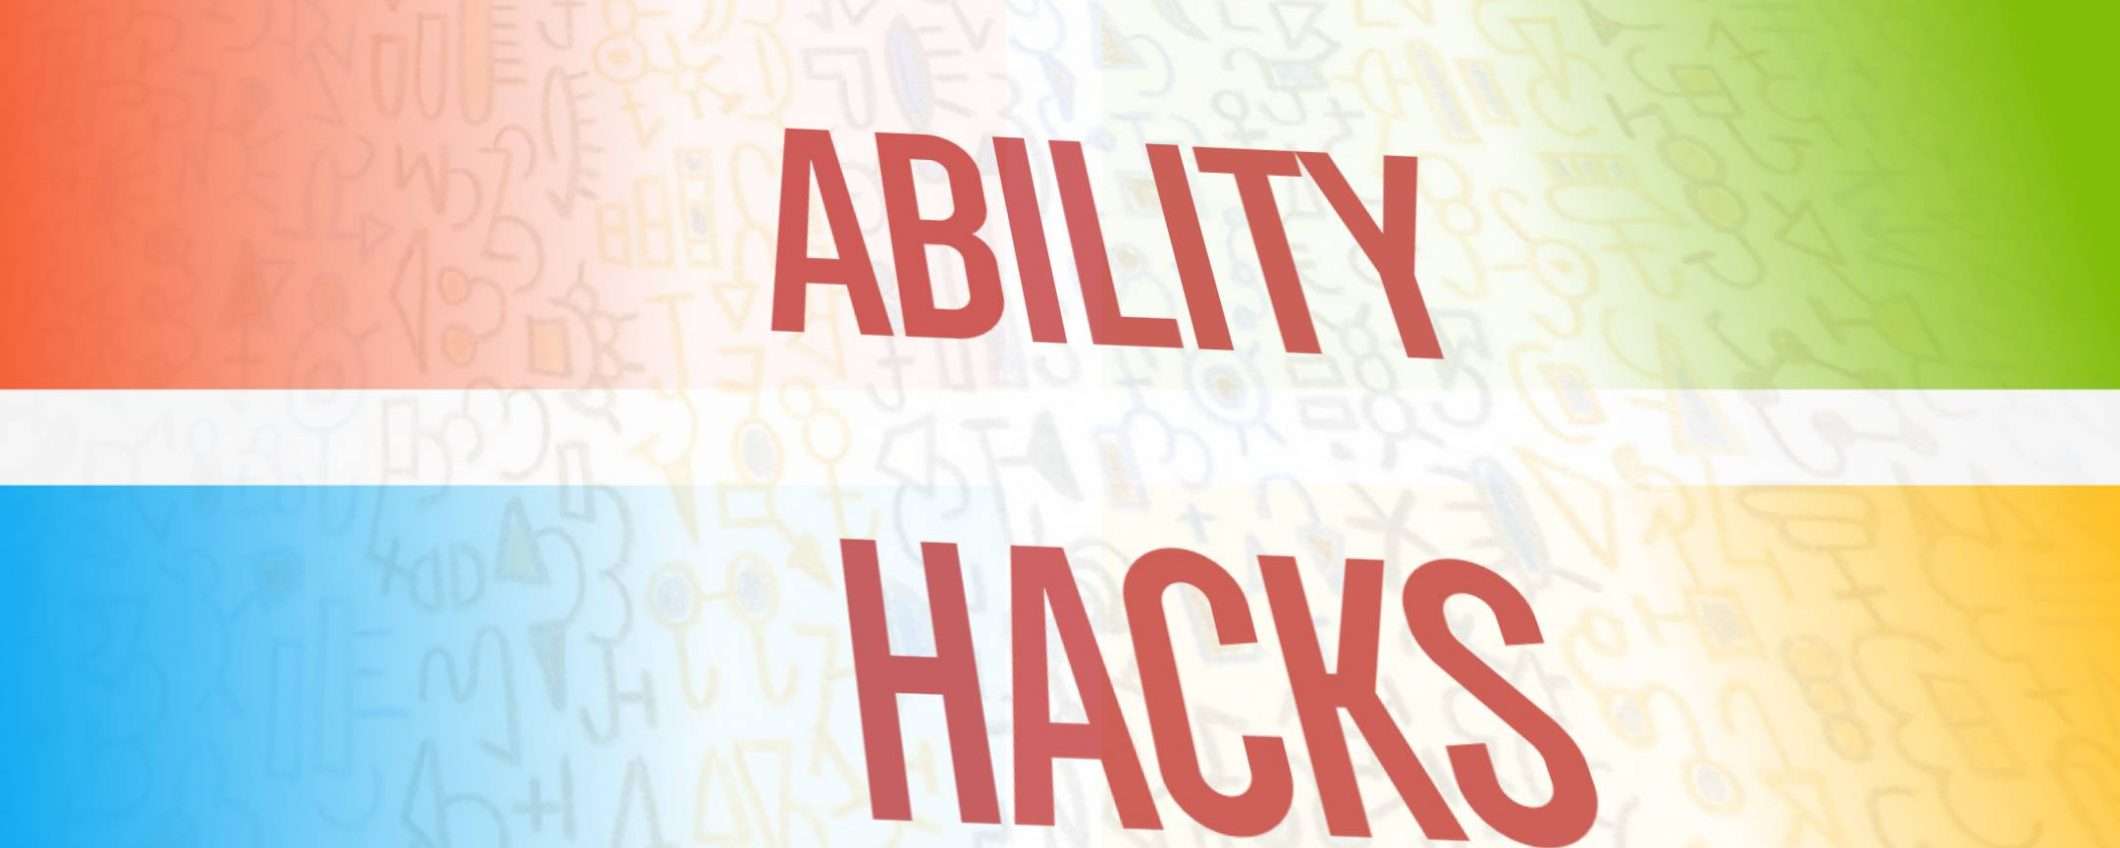 The Ability Hacks: creatività per l'accessibilità